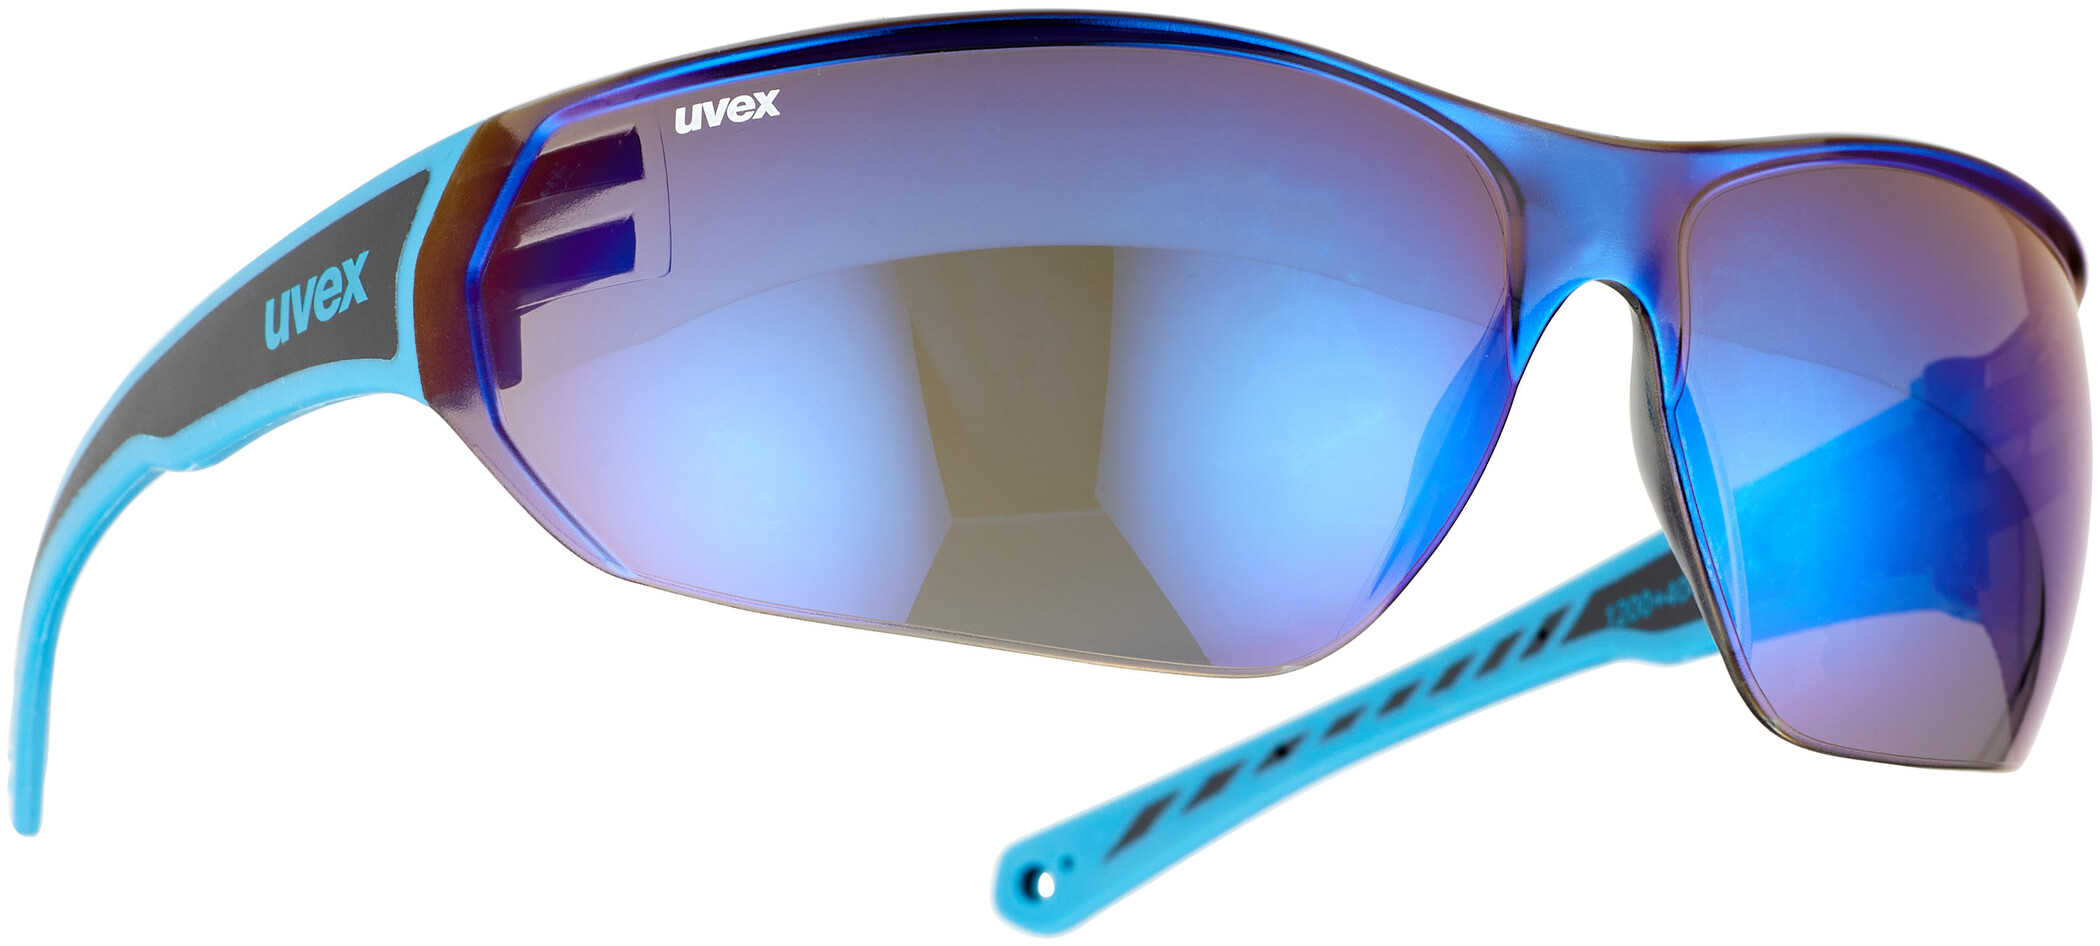 Uvex sgl 204 vélo/Lunettes sport bleu 